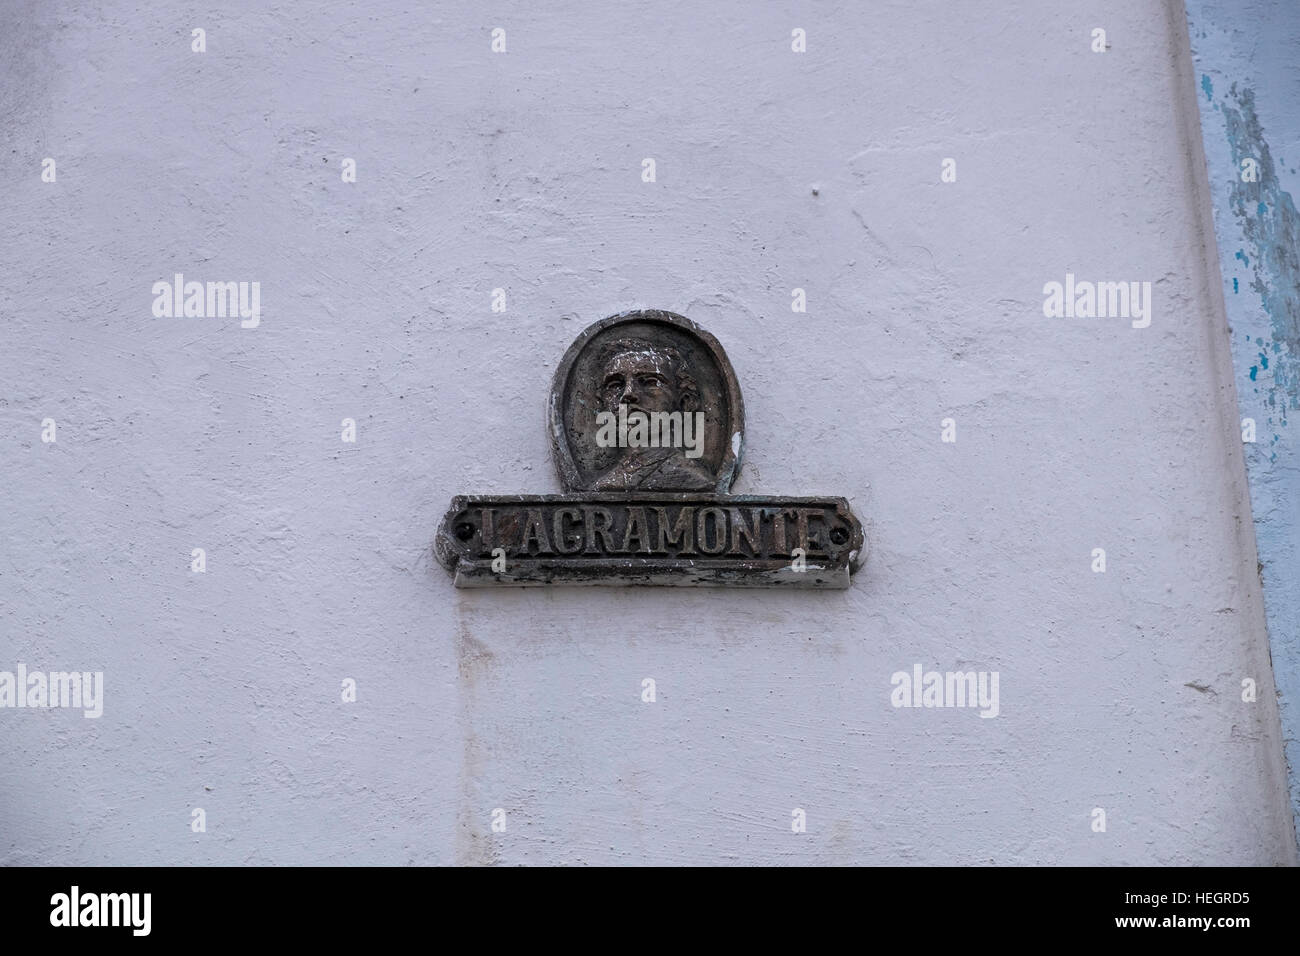 Ignacio Agromonte, nombre de la calle, firme en la pared, Camagüey, Cuba Foto de stock